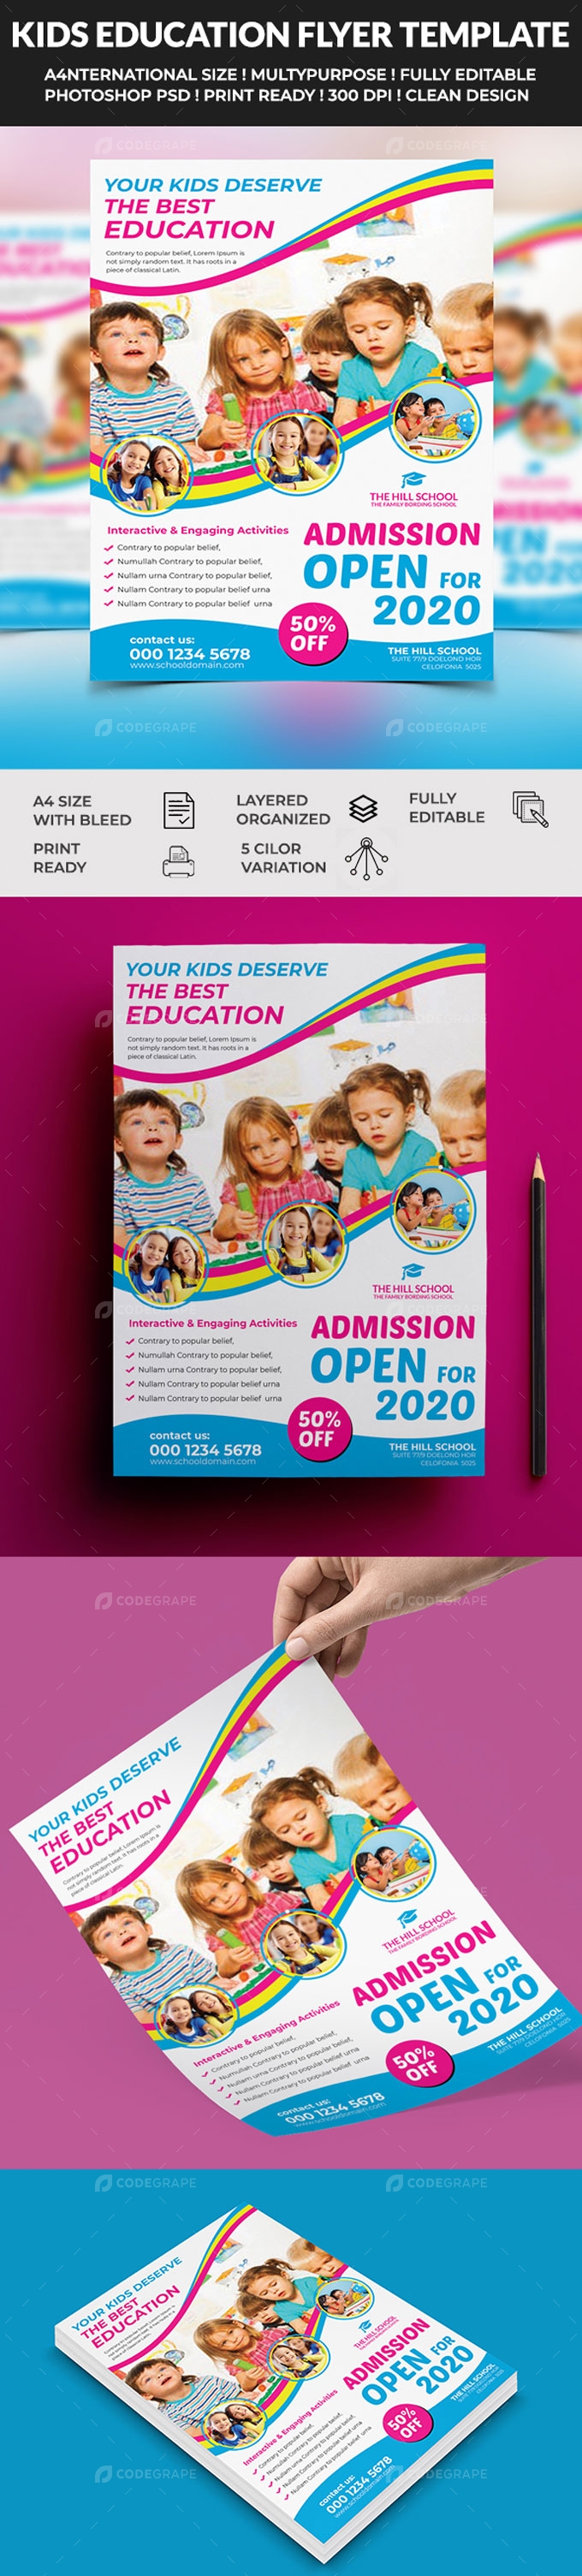 Kids School Education Flyer